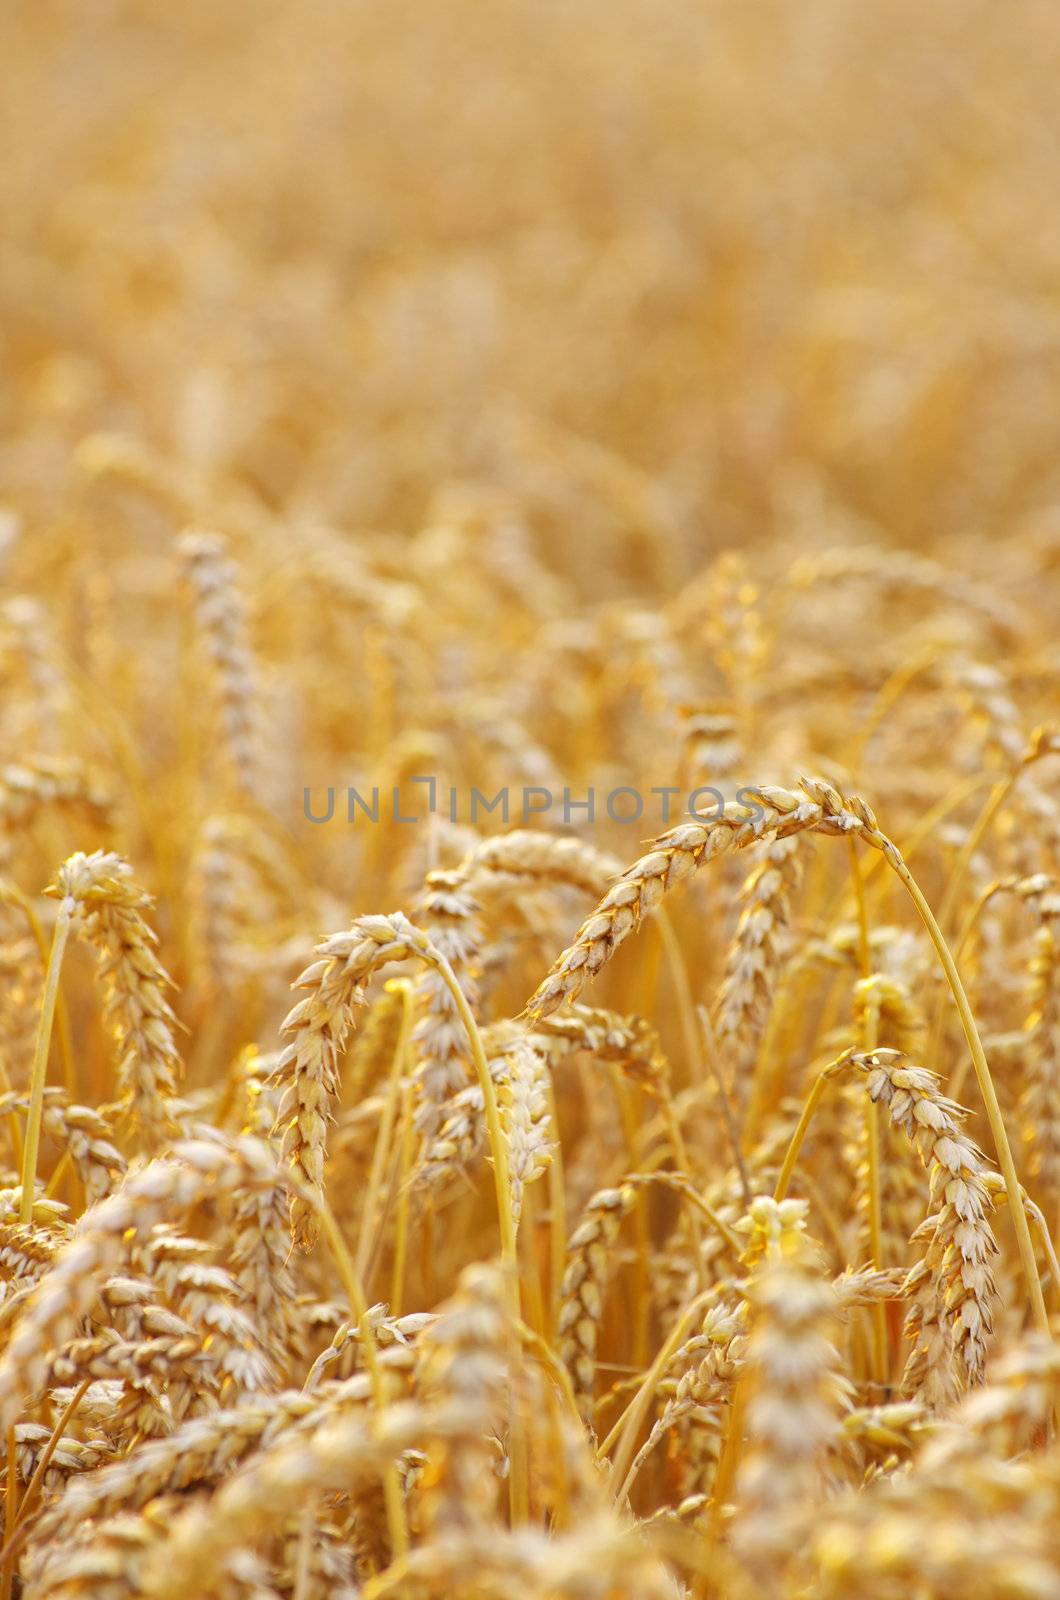  wheat  by Pakhnyushchyy